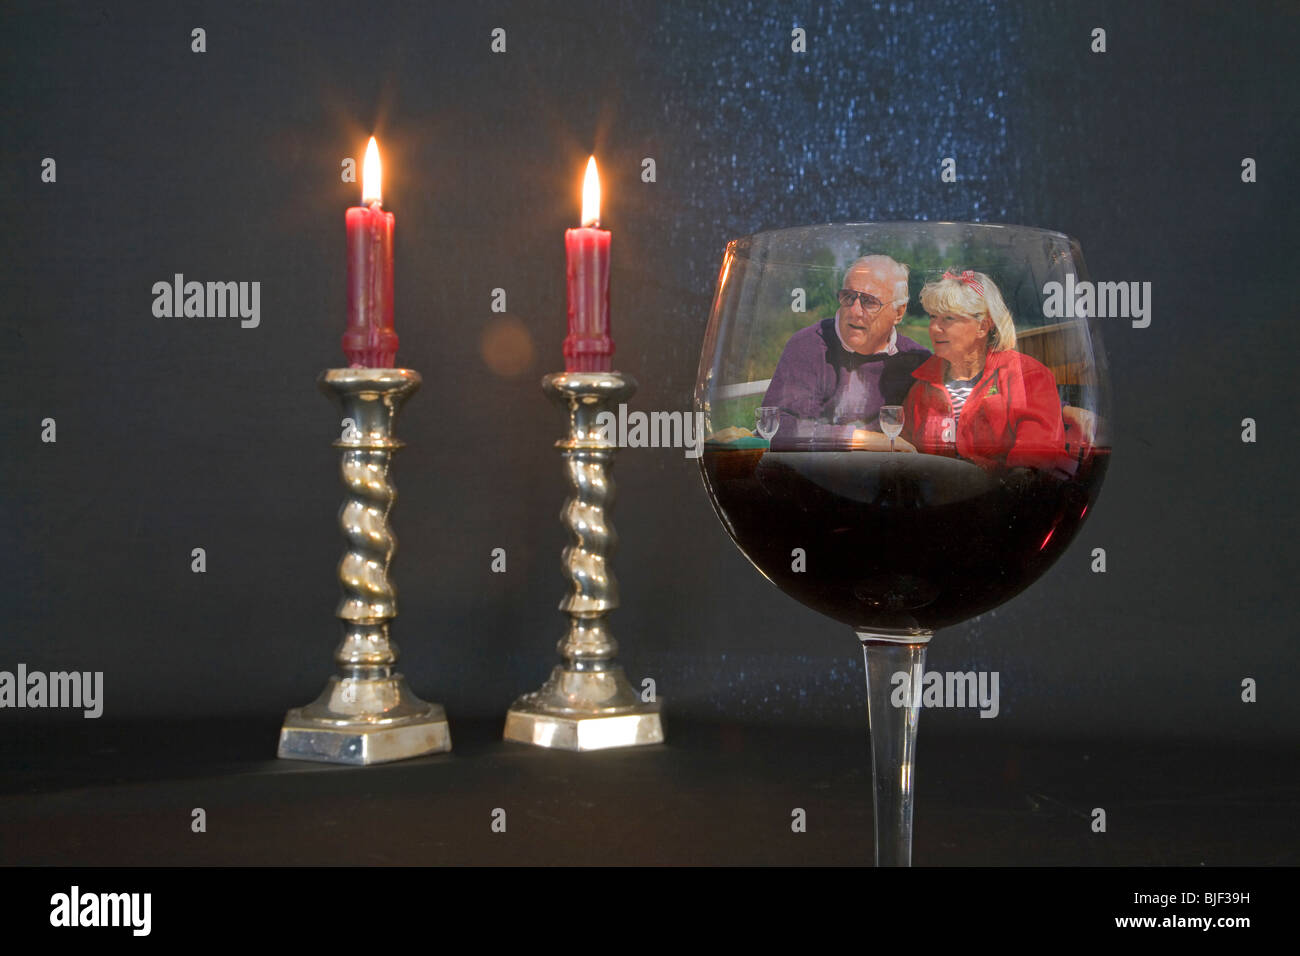 brennende Kerzen, ein Glas roten Pino Noir Wein, in einer romantischen situation Stockfoto